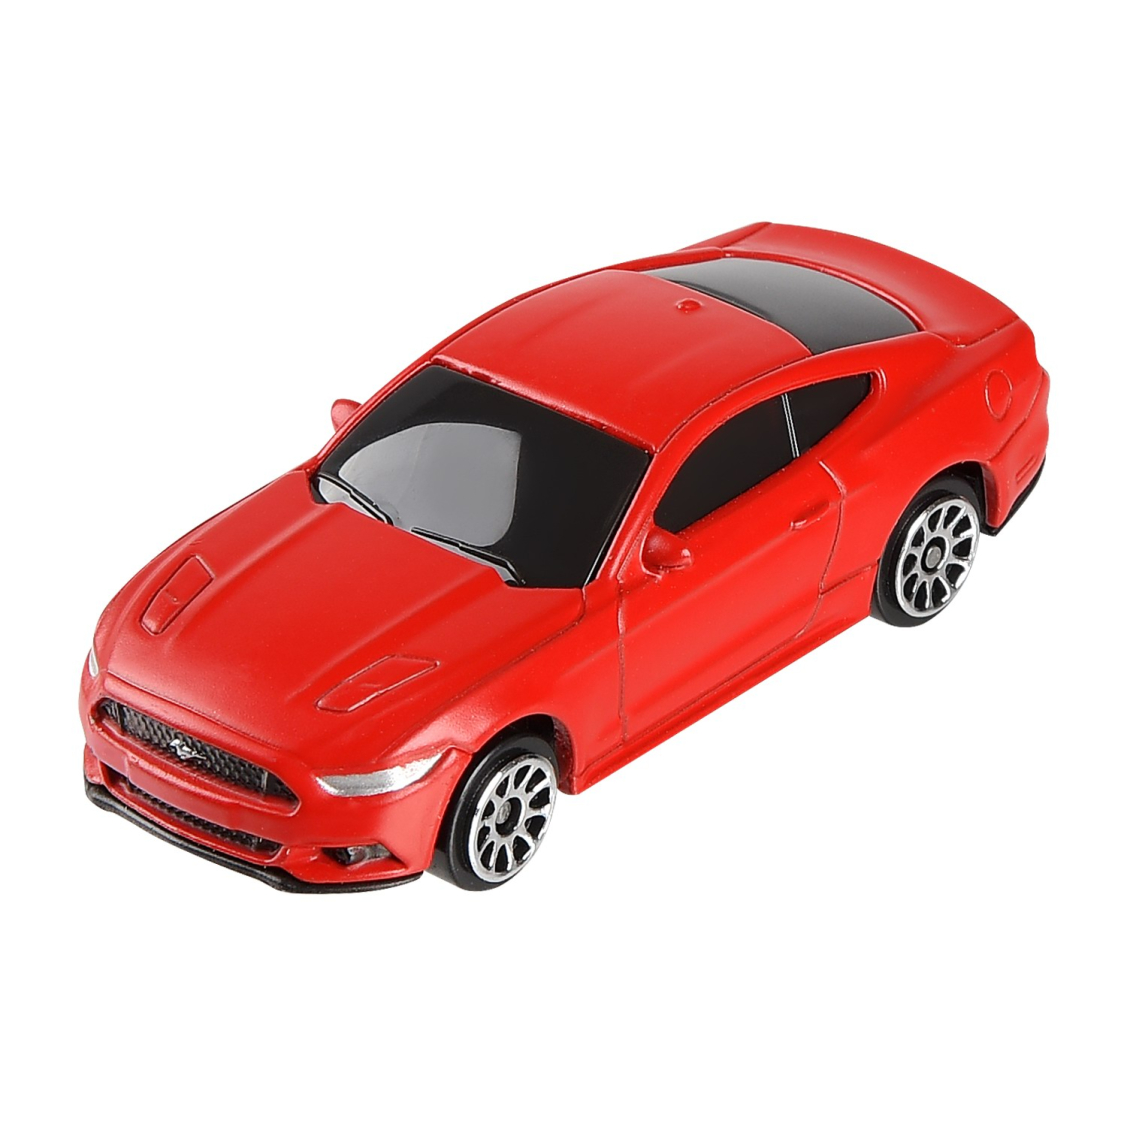 Машинка металлическая Uni-Fortune RMZ City 1:64 Ford Mustang 2015, без механизмов, цвет красный матовый,